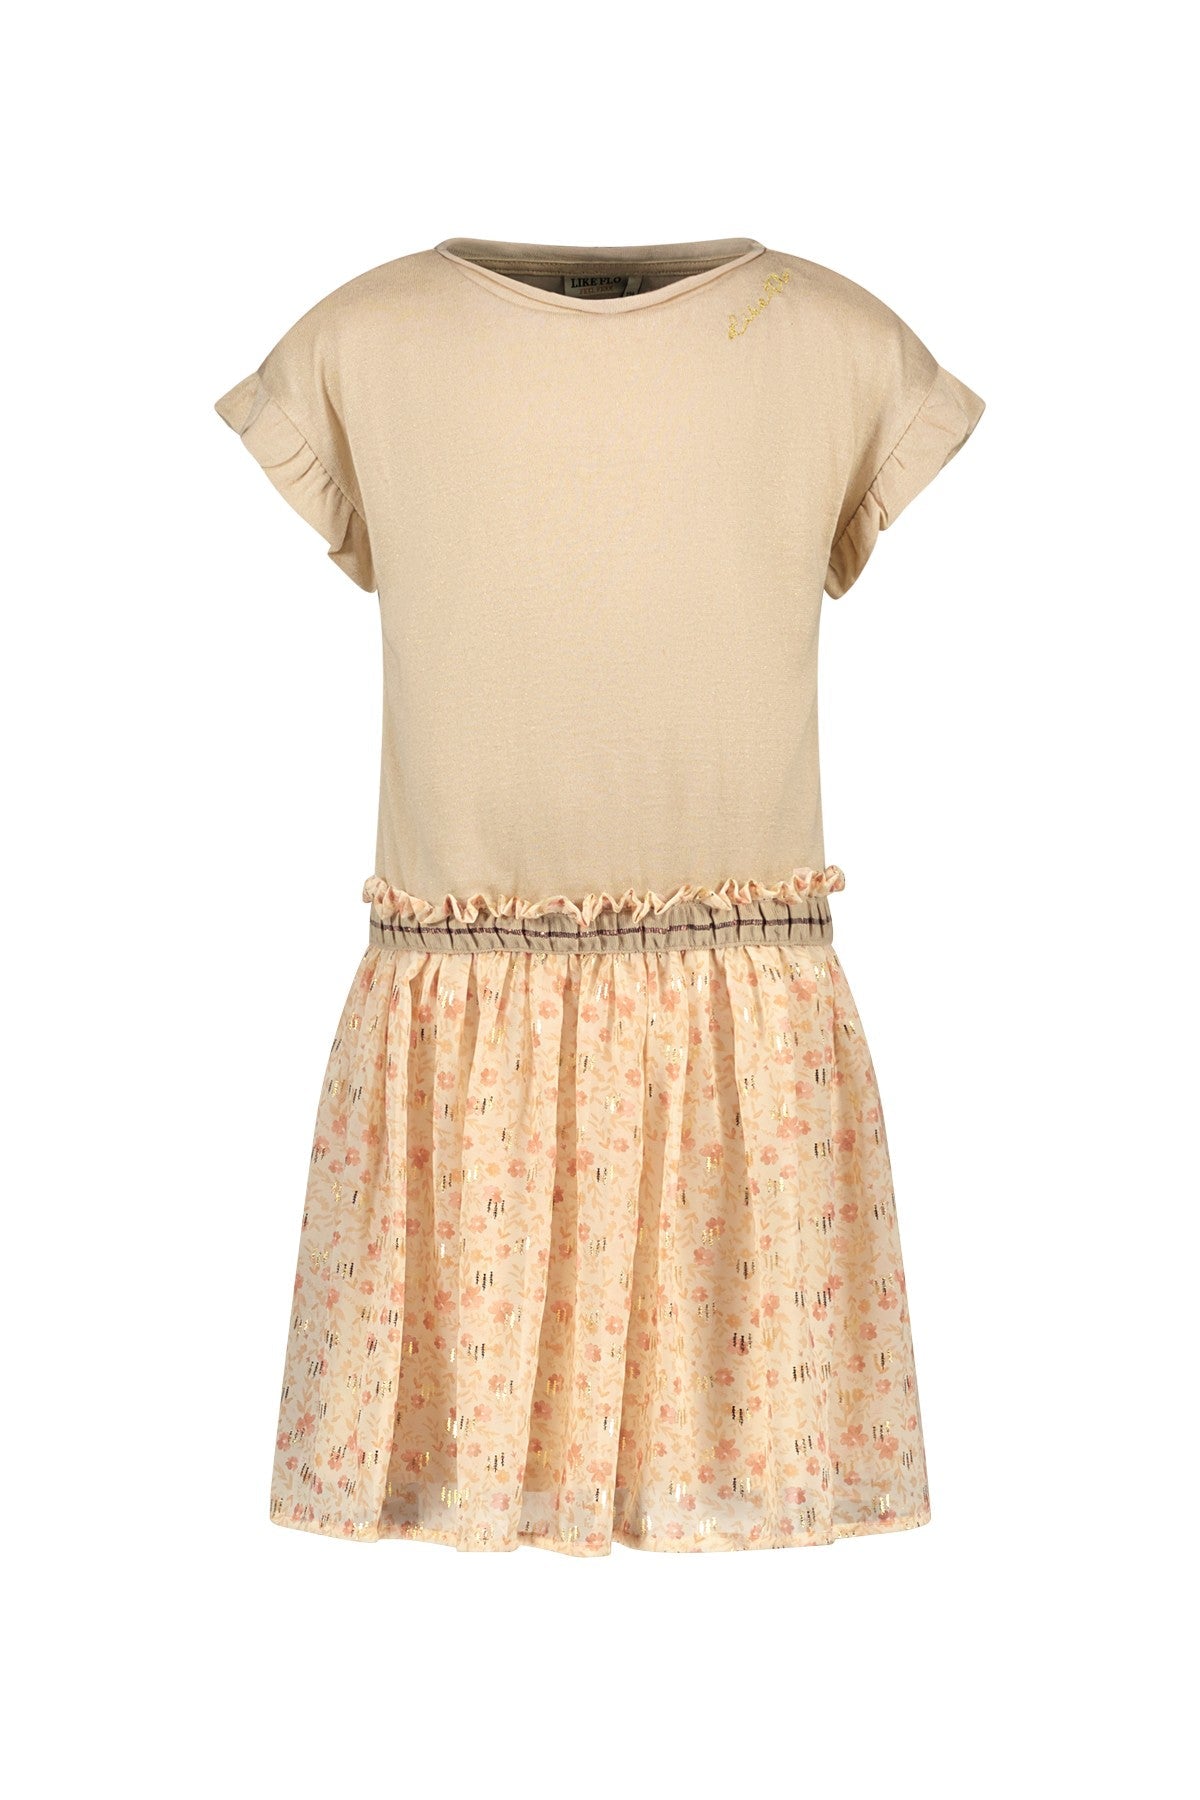 Meisjes Chiffon Flower Dress With Metallic Jersey Top van Like Flo in de kleur Flower in maat 140.